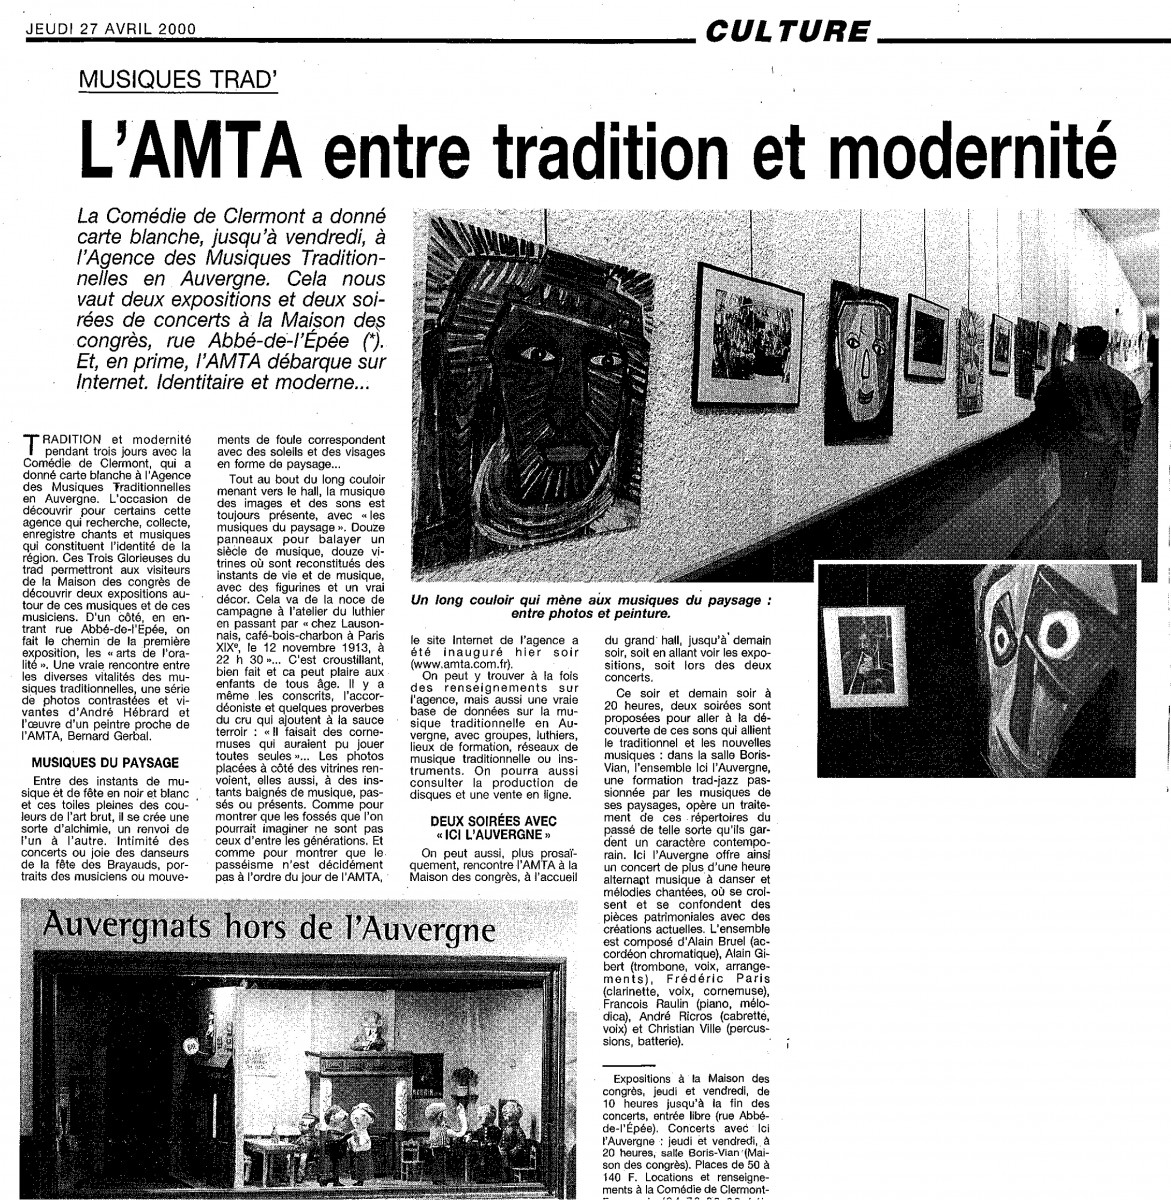 Rétroregards 2000 : « Entre tradition et modernité » (La Montagne)